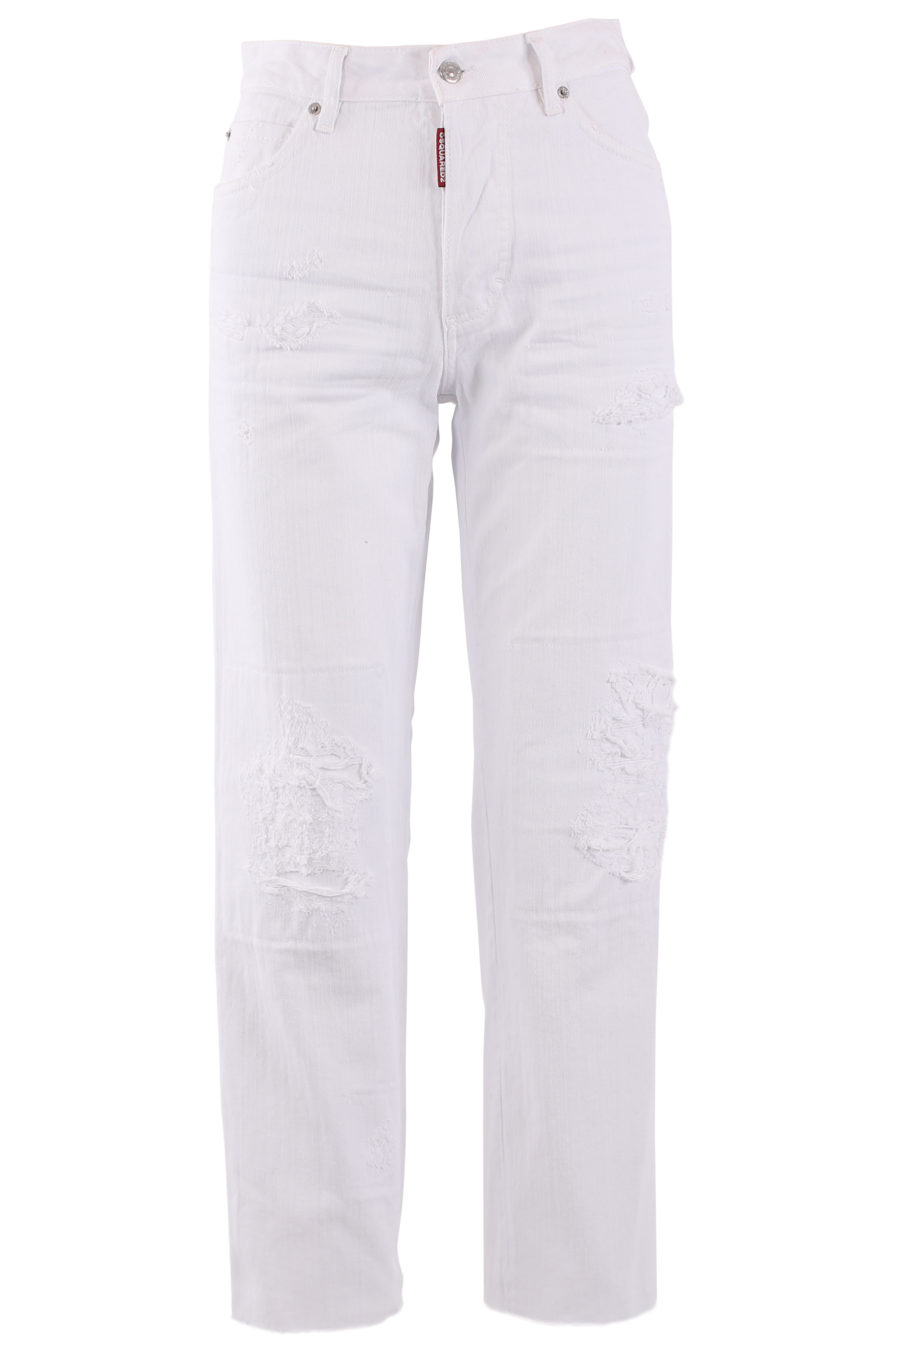 Pantalón tejano blanco desgastado "Boston jean" - IMG 6712